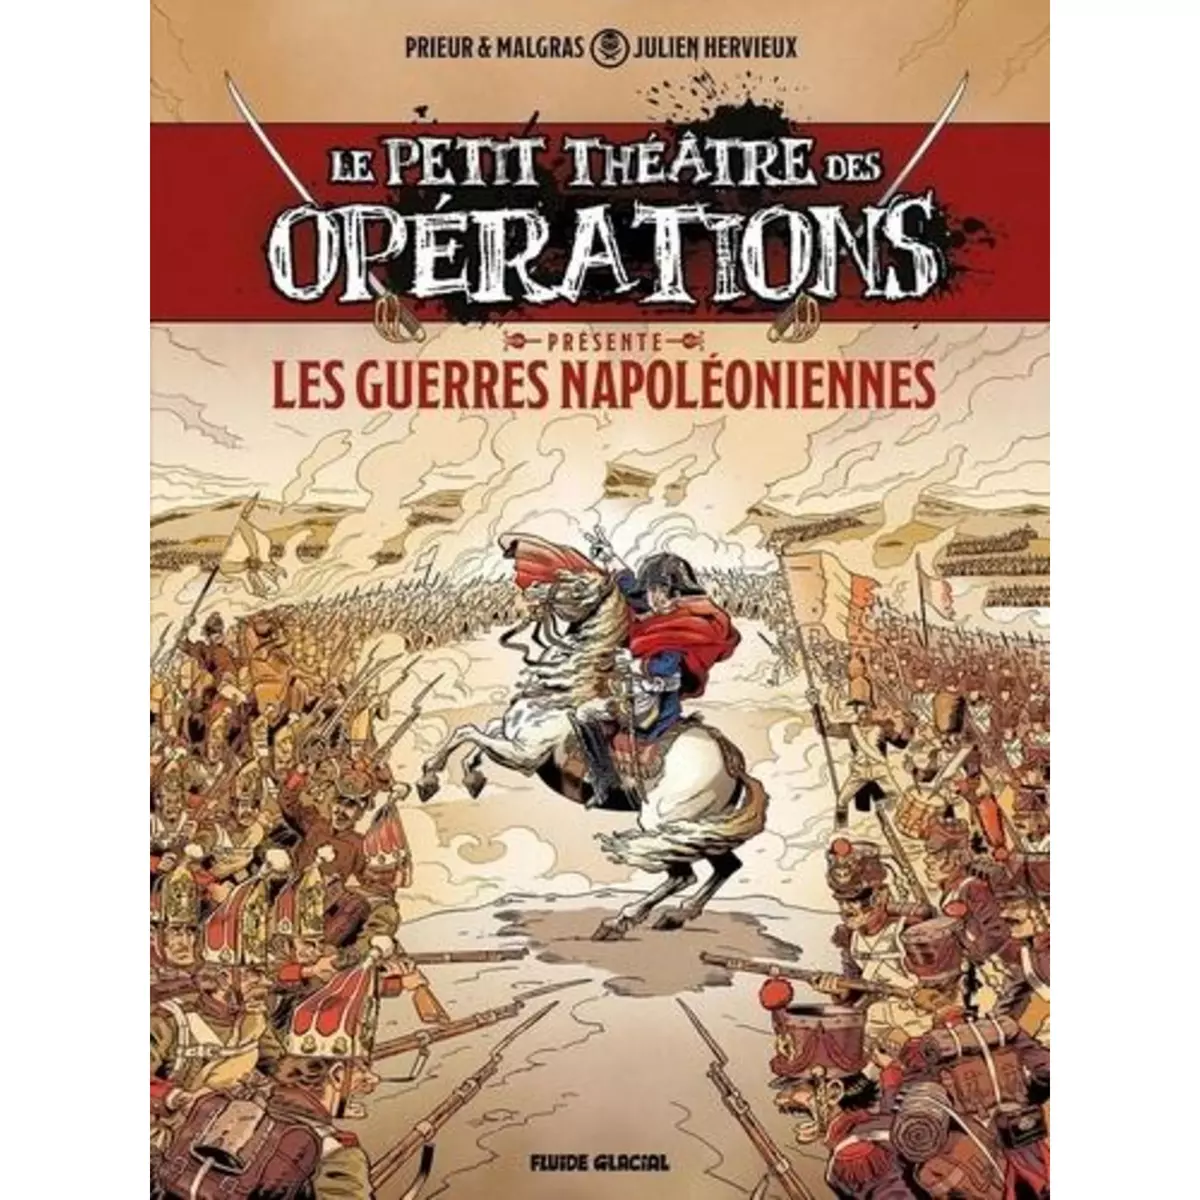  LE PETIT THEATRE DES OPERATIONS : LES GUERRES NAPOLEONIENNES, Hervieux Julien